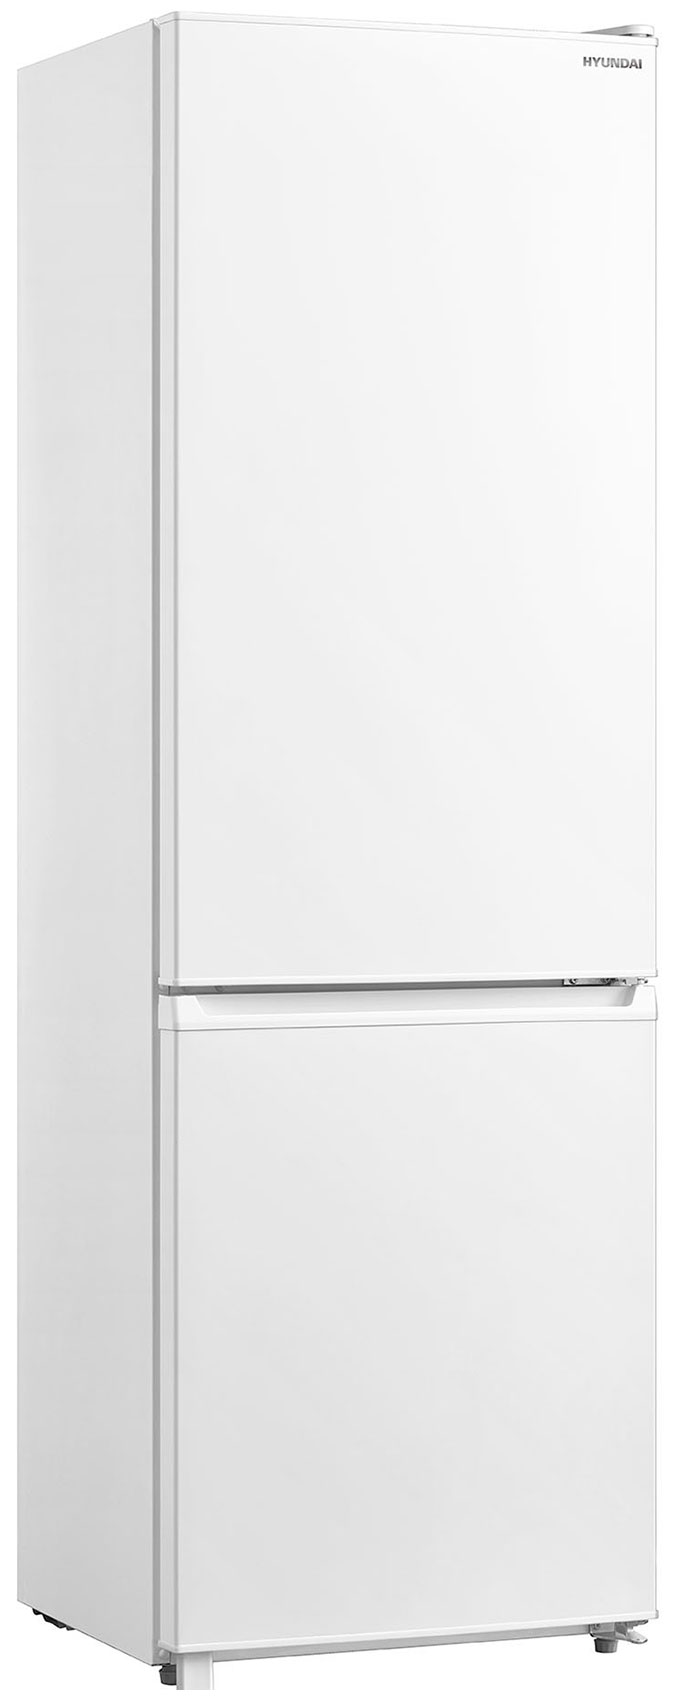 Двухкамерный холодильник Hyundai CC3091LWT белый холодильник hyundai cc2056fwt белый двухкамерный